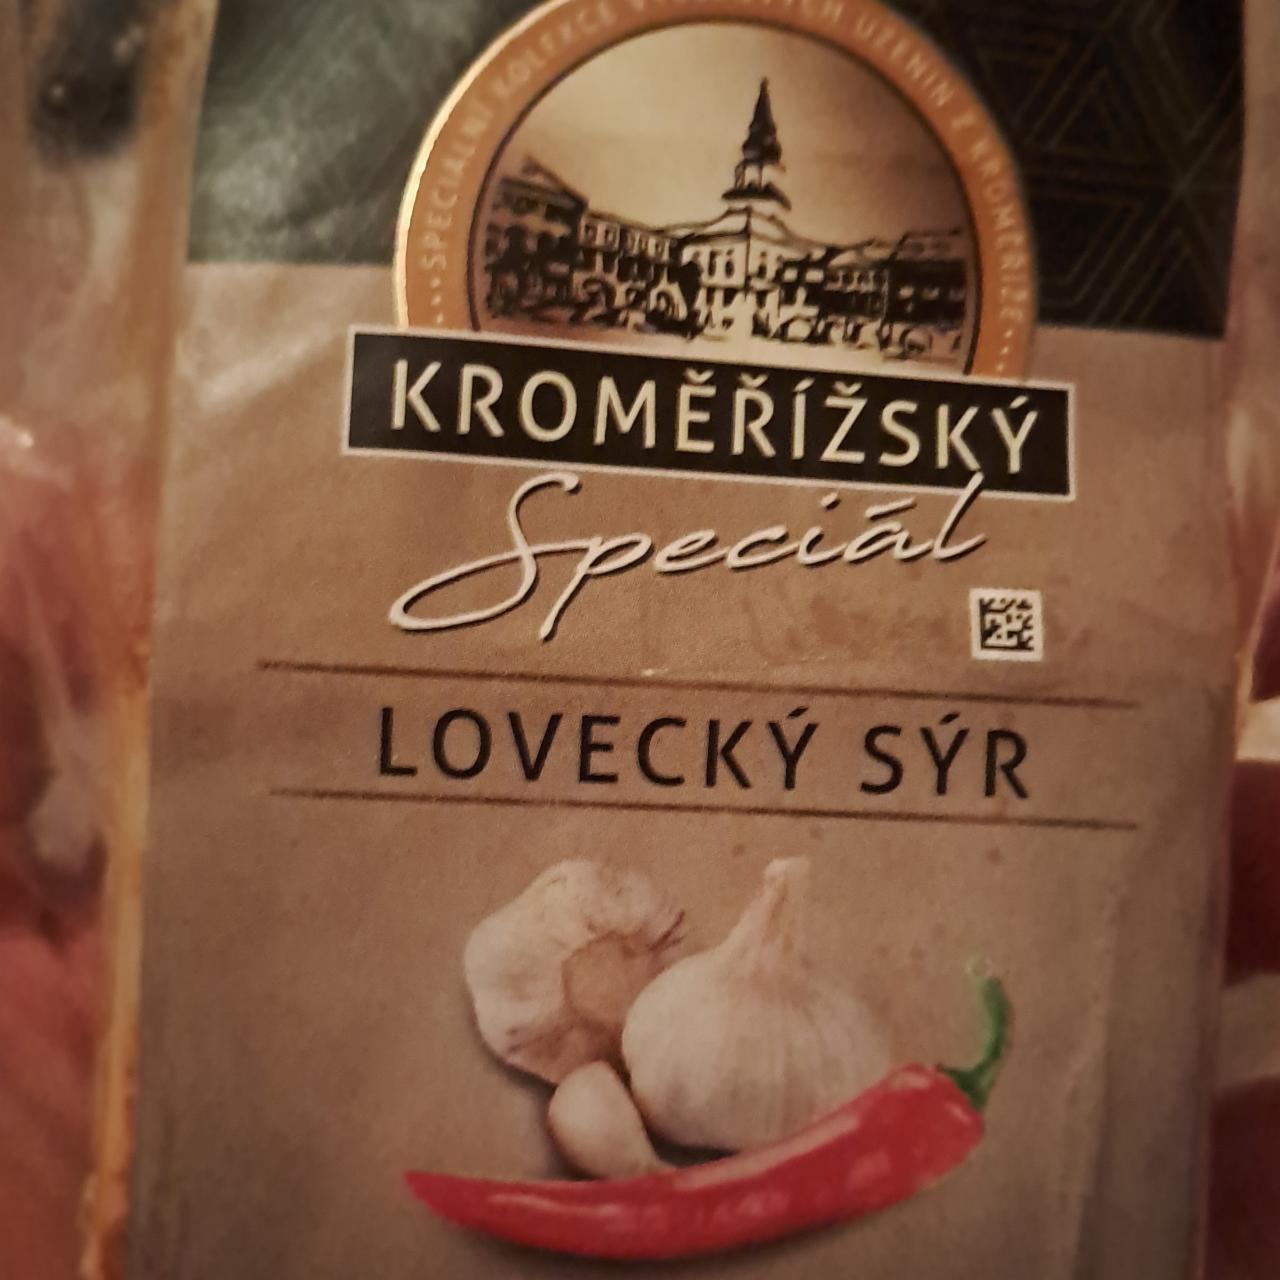 Fotografie - Kroměřížský Speciál Lovecký sýr